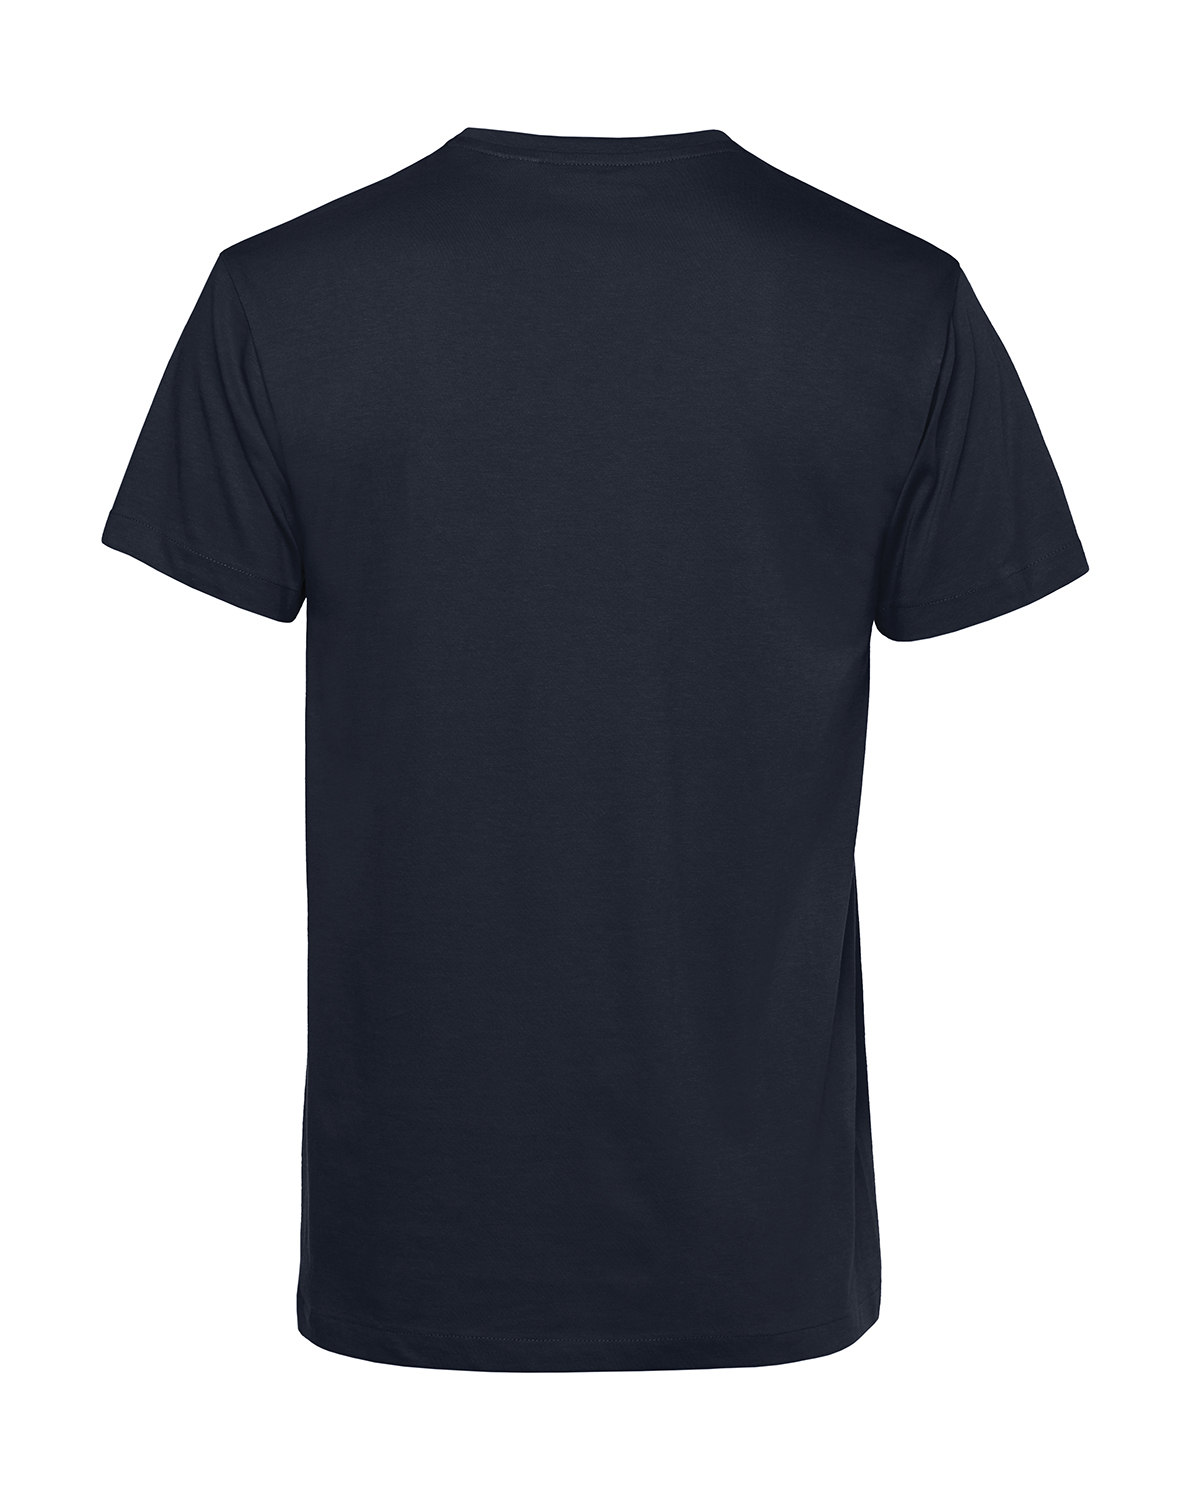 Nachhaltiges T-Shirt Herren 2Takt - Trotz Mauerfall und Wende S50